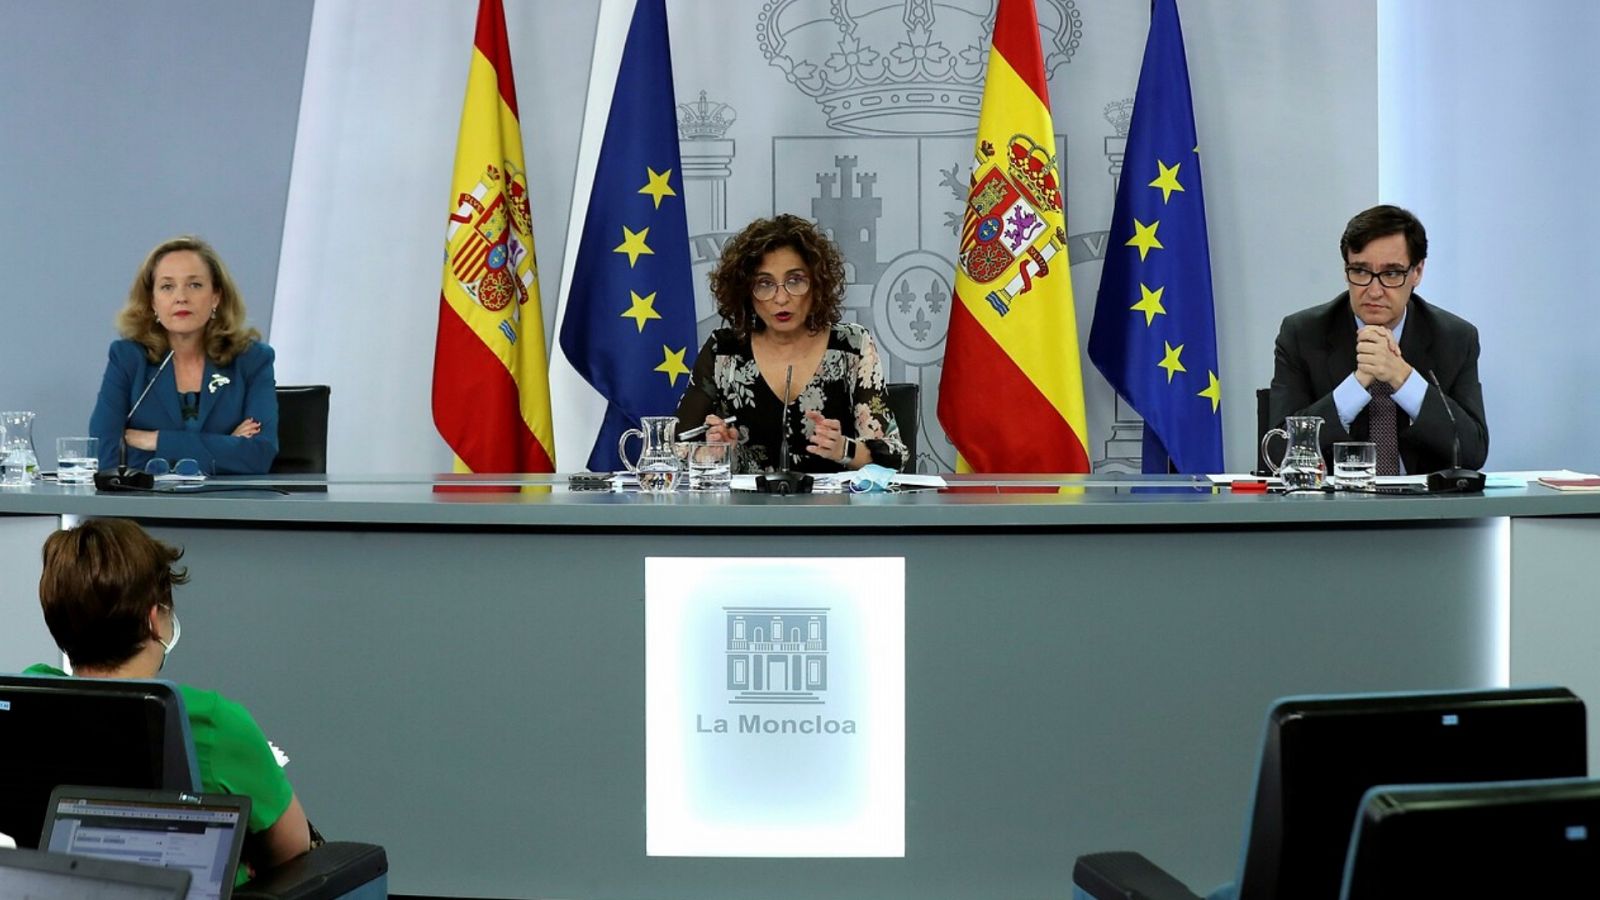 Especial informativo - Comparecencia de la ministra portavoz, ministra de Economía y ministro de Sanidad - 28/07/20 - RTVE.es